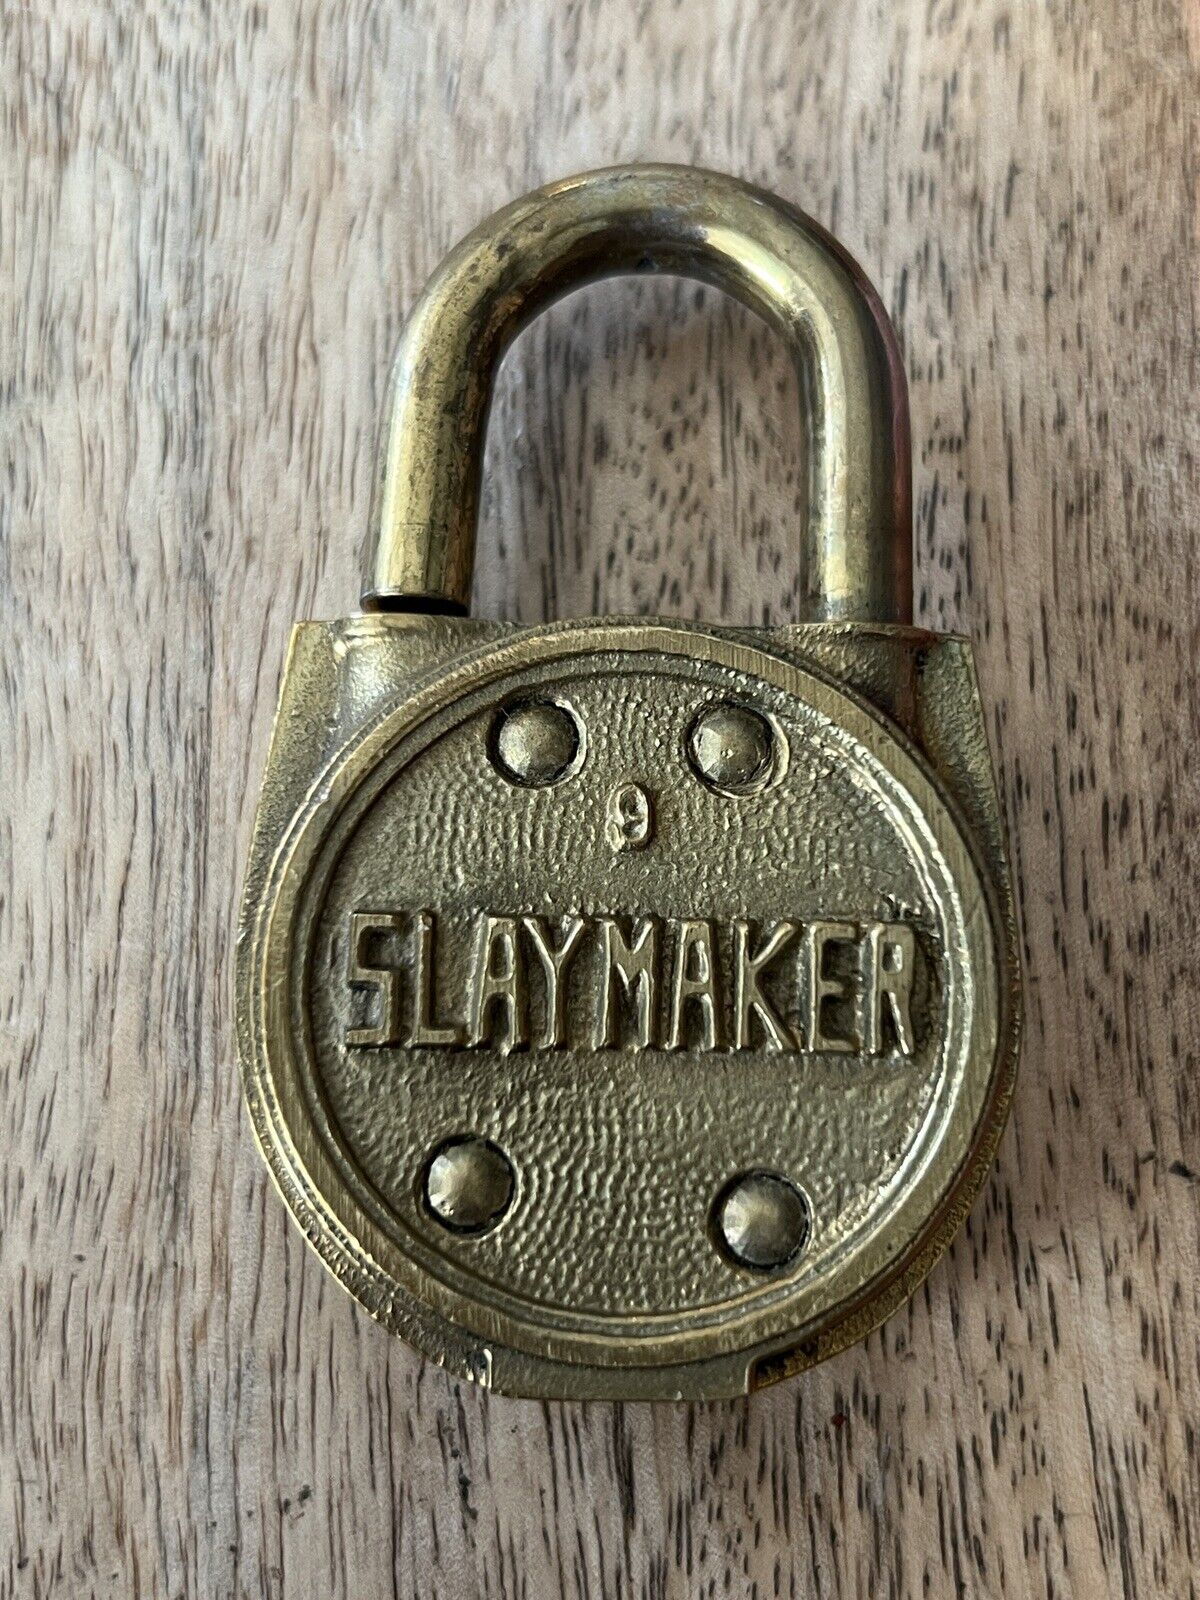 Vintage Old Slaymaker Brass Padlock No Key